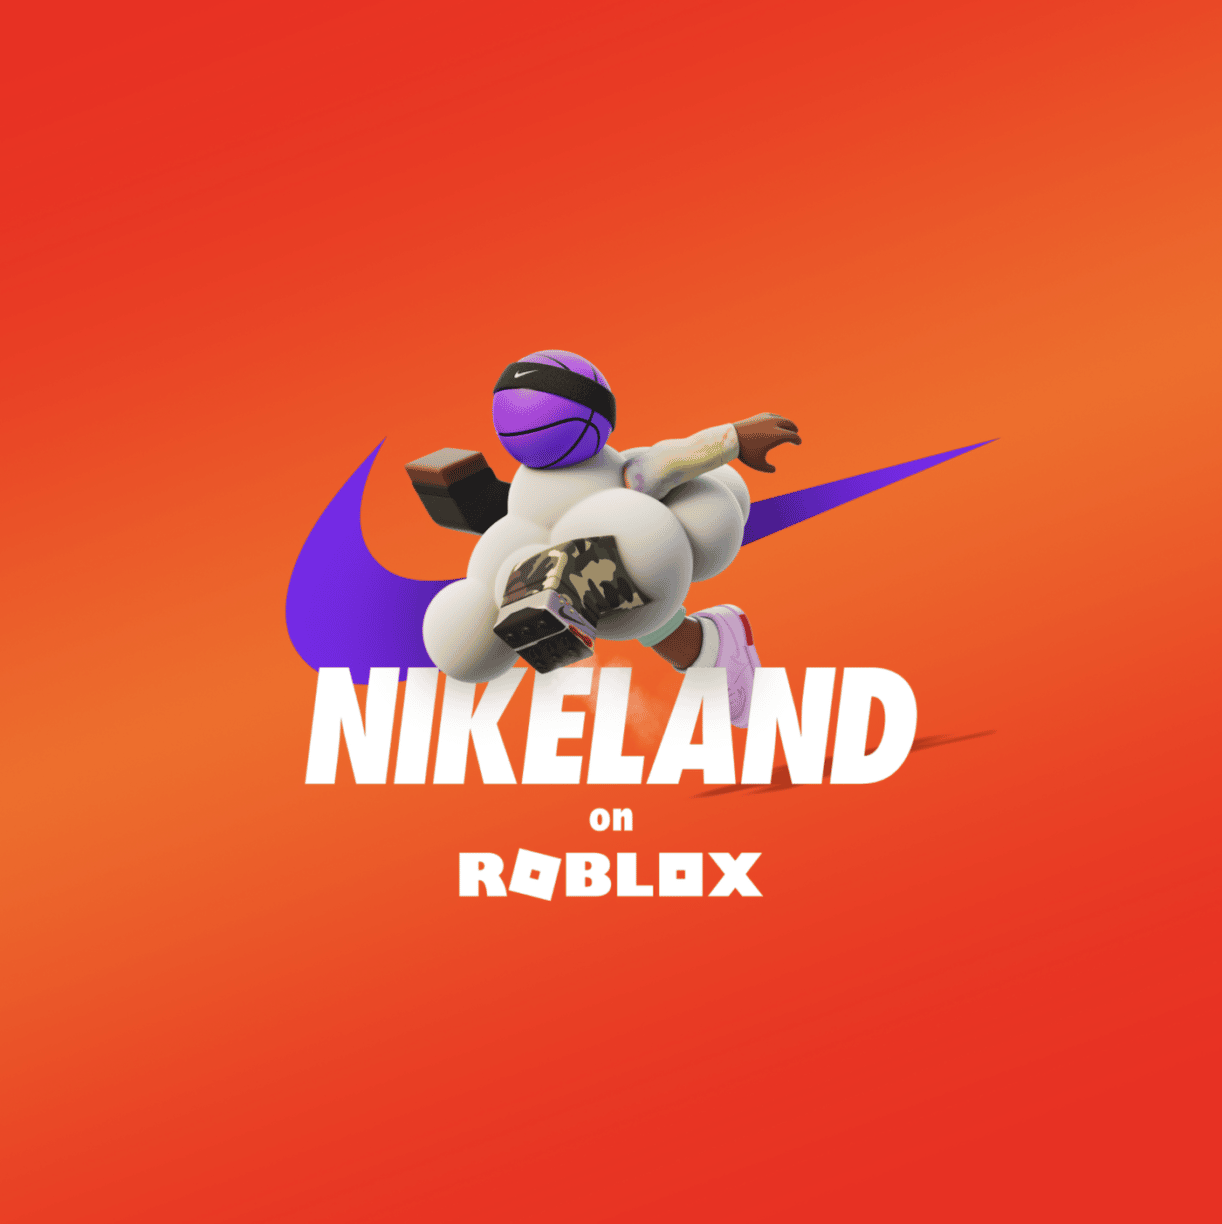 Nikeland roblox7